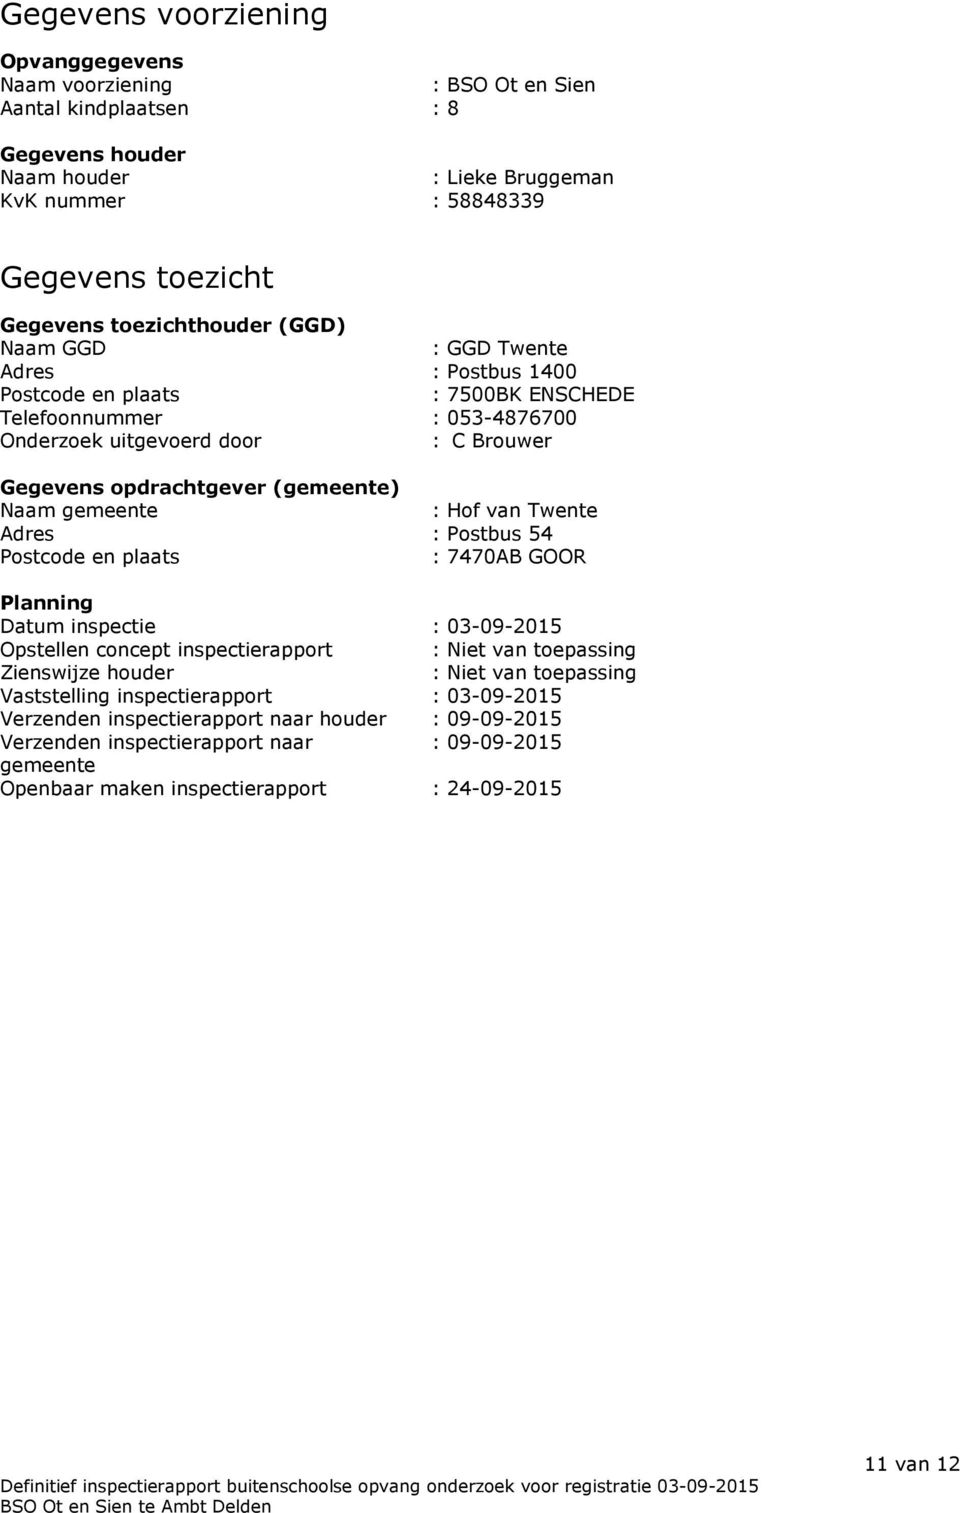 (gemeente) Naam gemeente : Hof van Twente Adres : Postbus 54 Postcode en plaats : 7470AB GOOR Planning Datum inspectie : 03-09-2015 Opstellen concept inspectierapport : Niet van toepassing Zienswijze